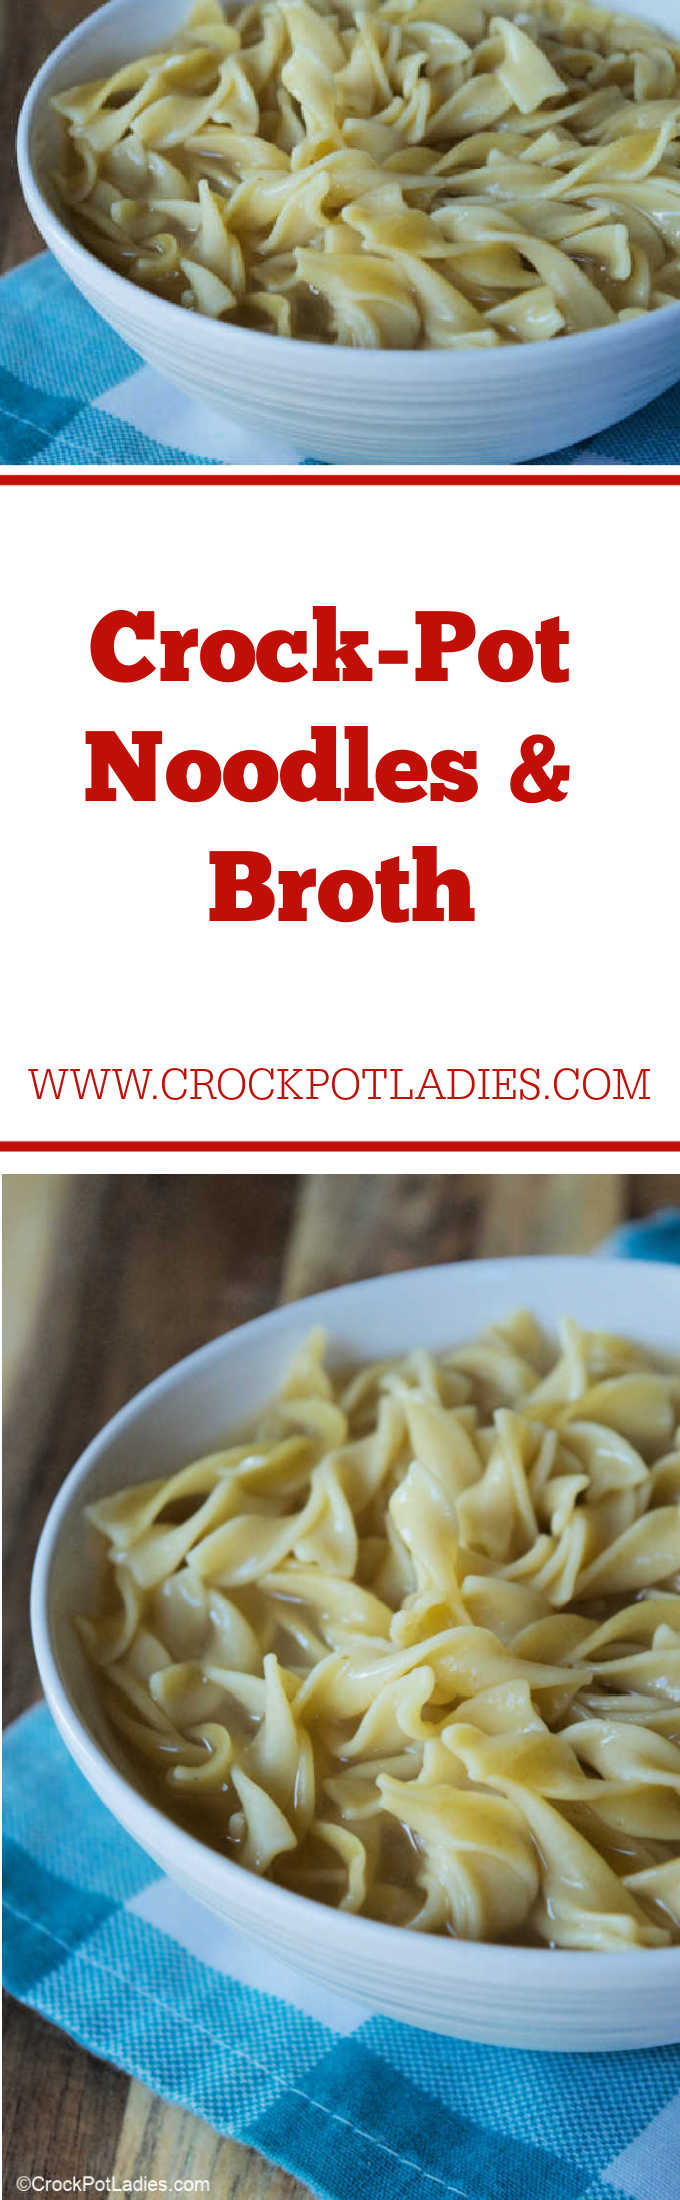 Crock-Pot Noodles & Broth